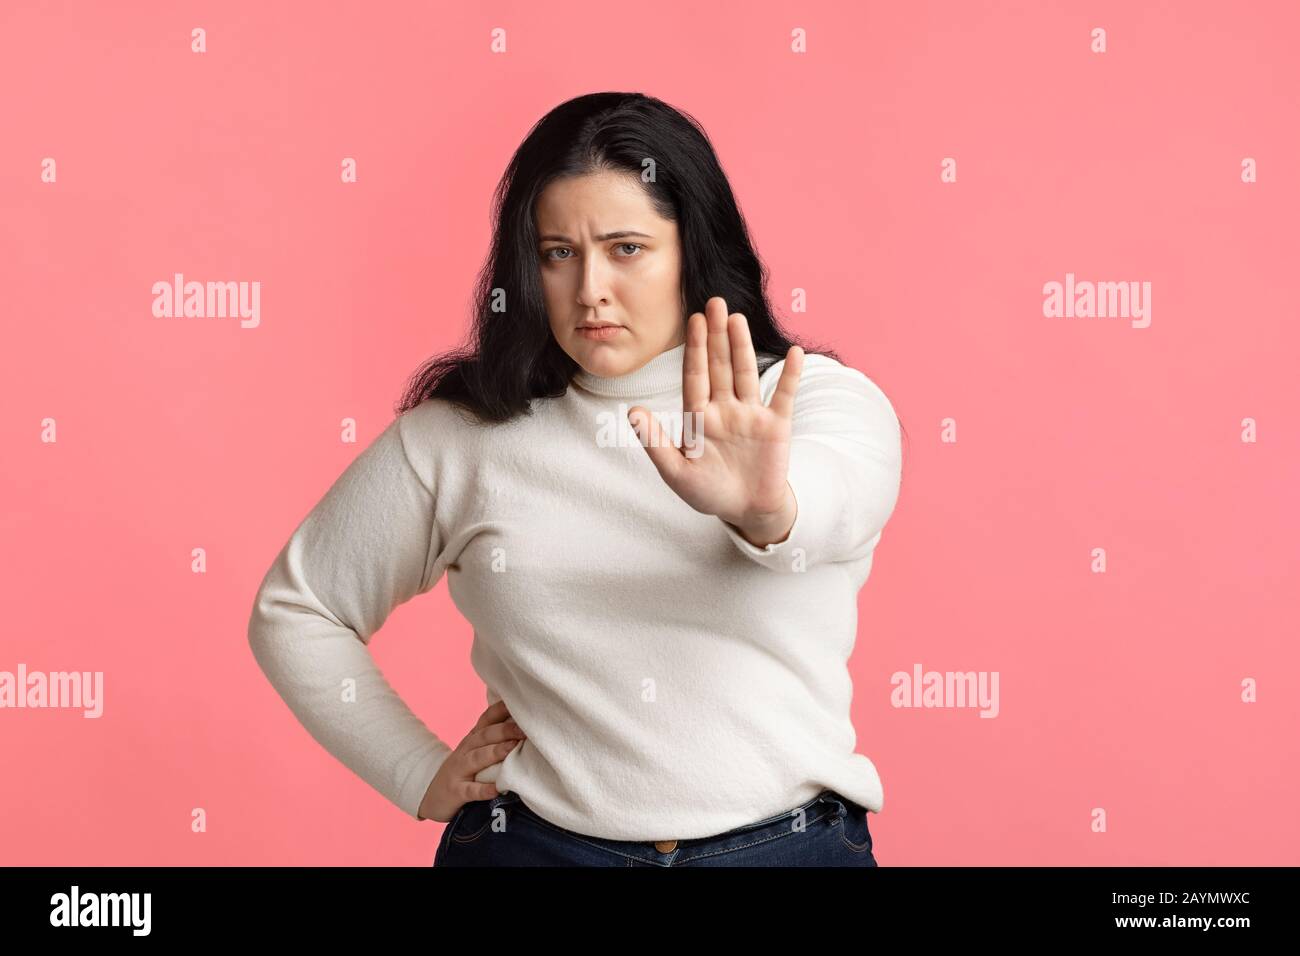 Schweres übergewichtiges Mädchen mit Stopp-Geste, mit ausgestreckter Hand stehend Stockfoto